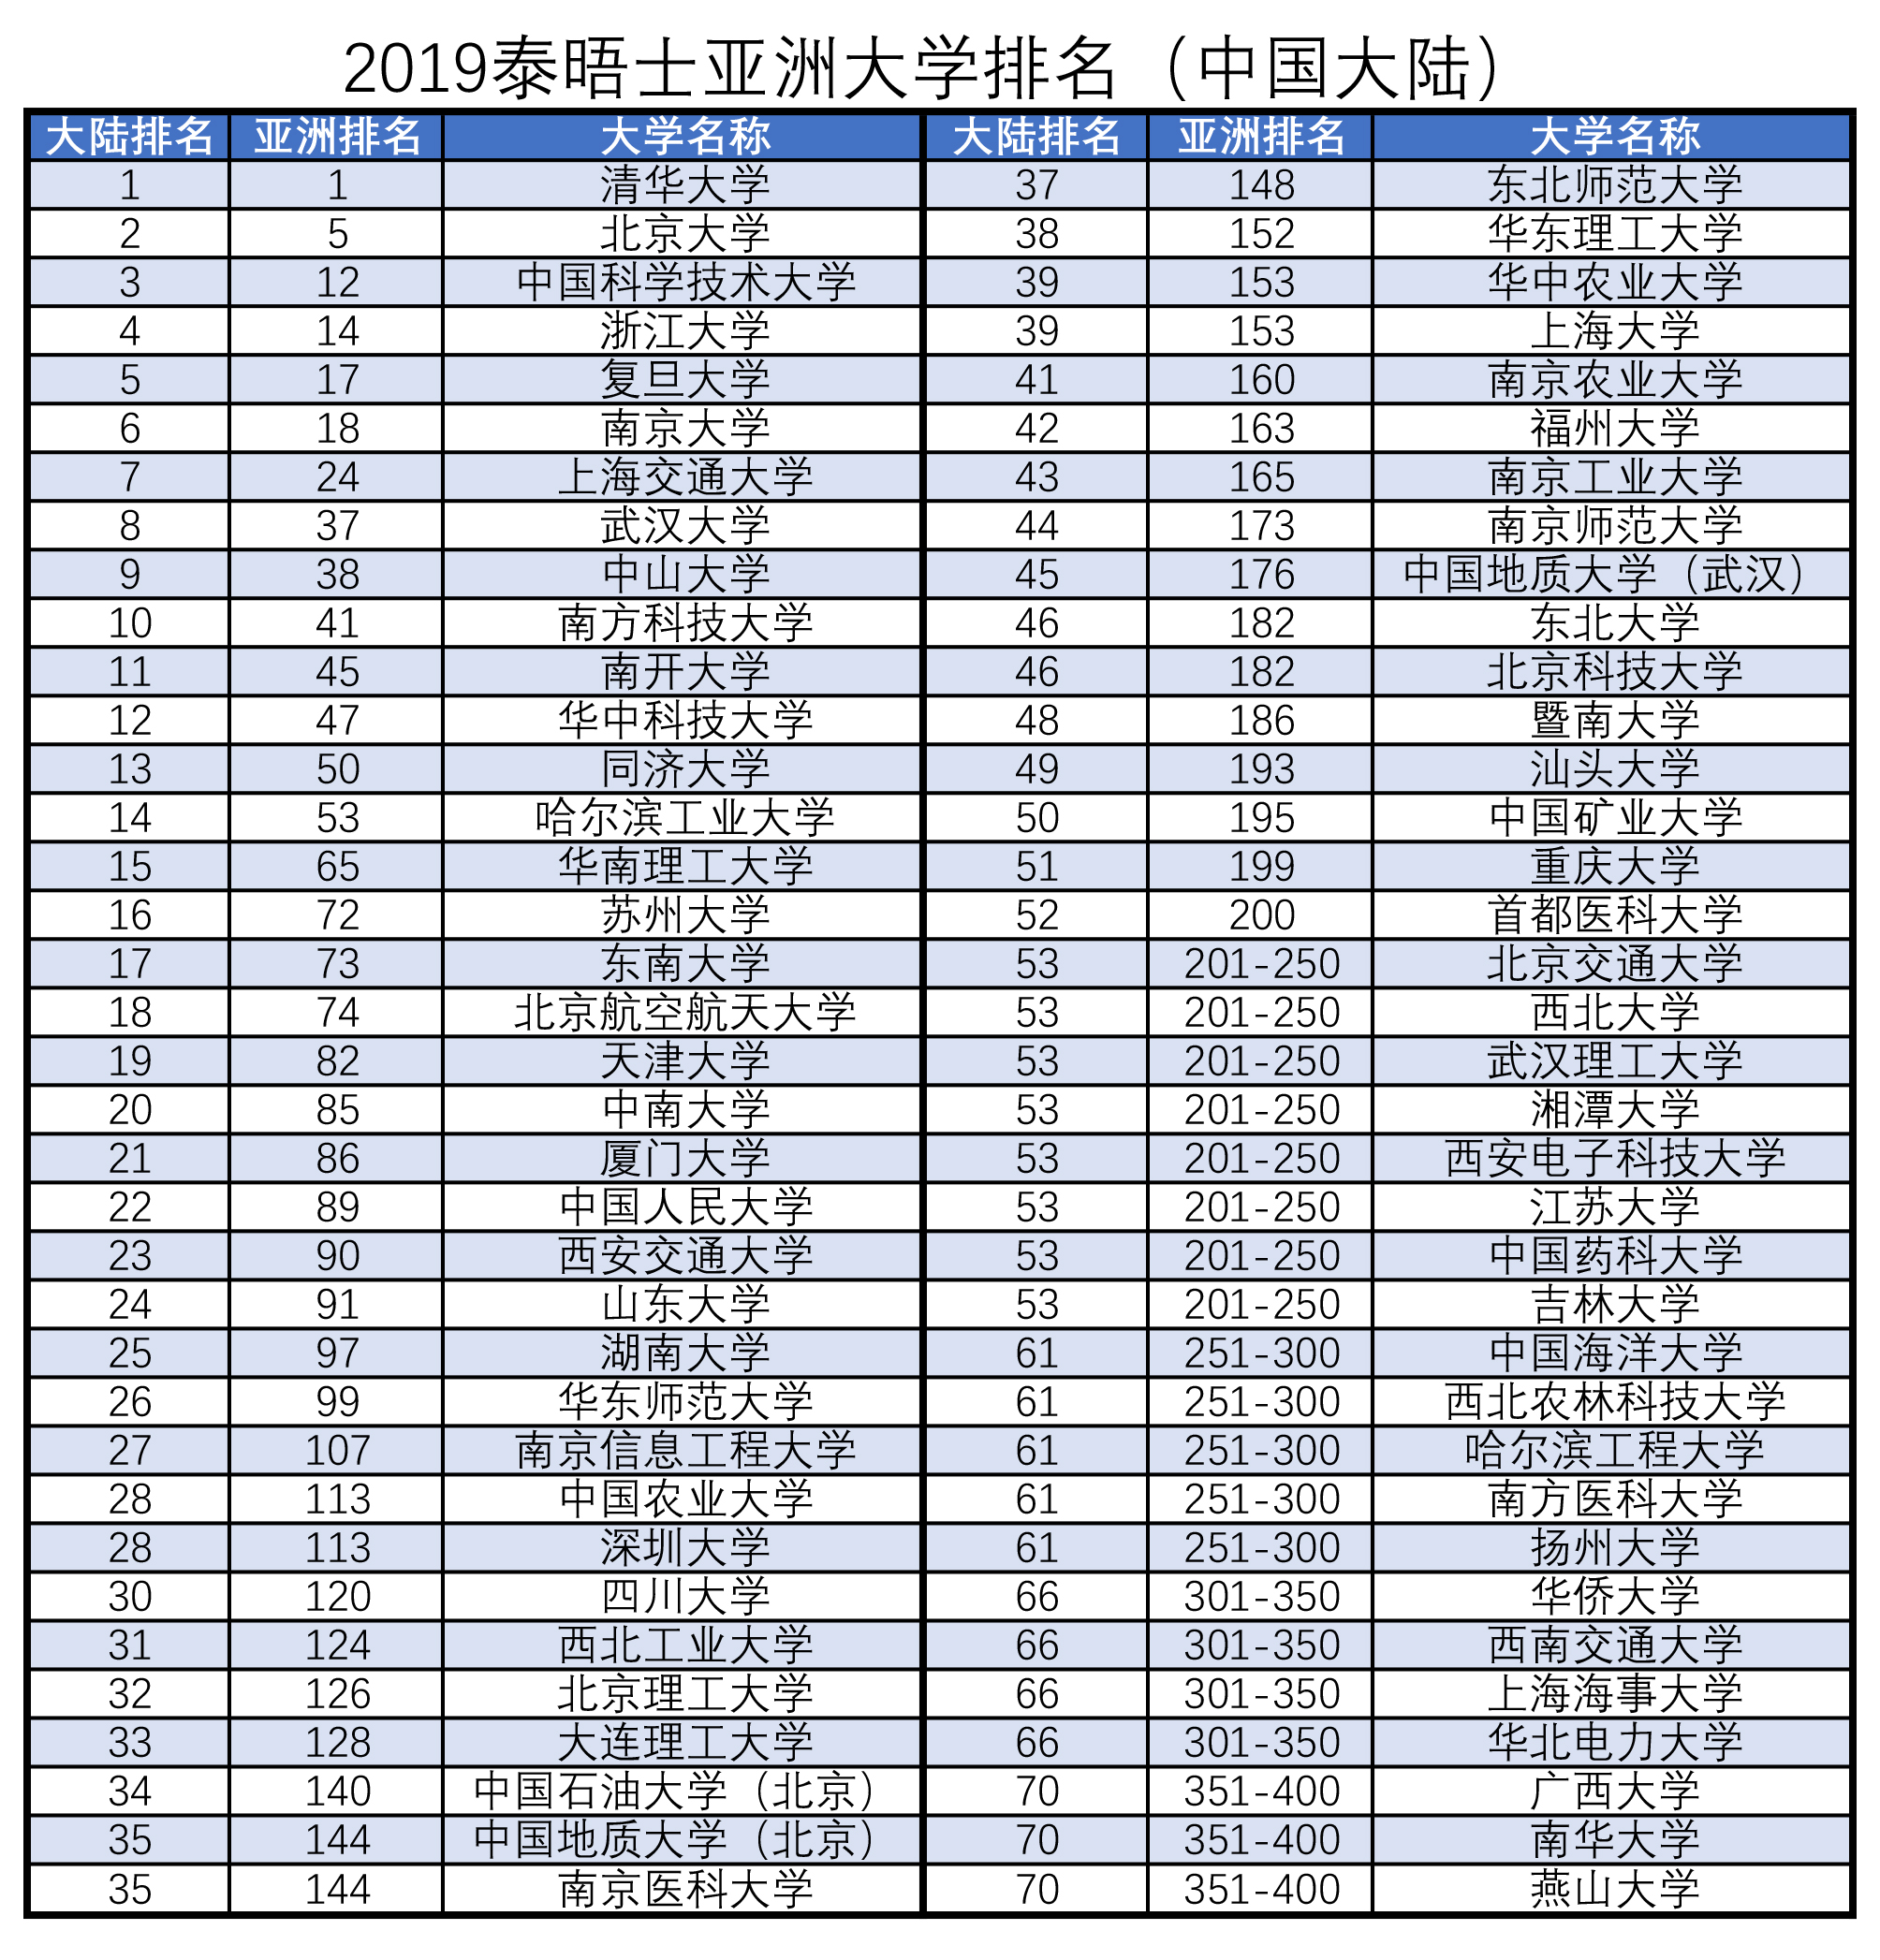 2019广东高校排行榜_围观 广东高校 薪酬榜 出炉 你的收入符合母校的水